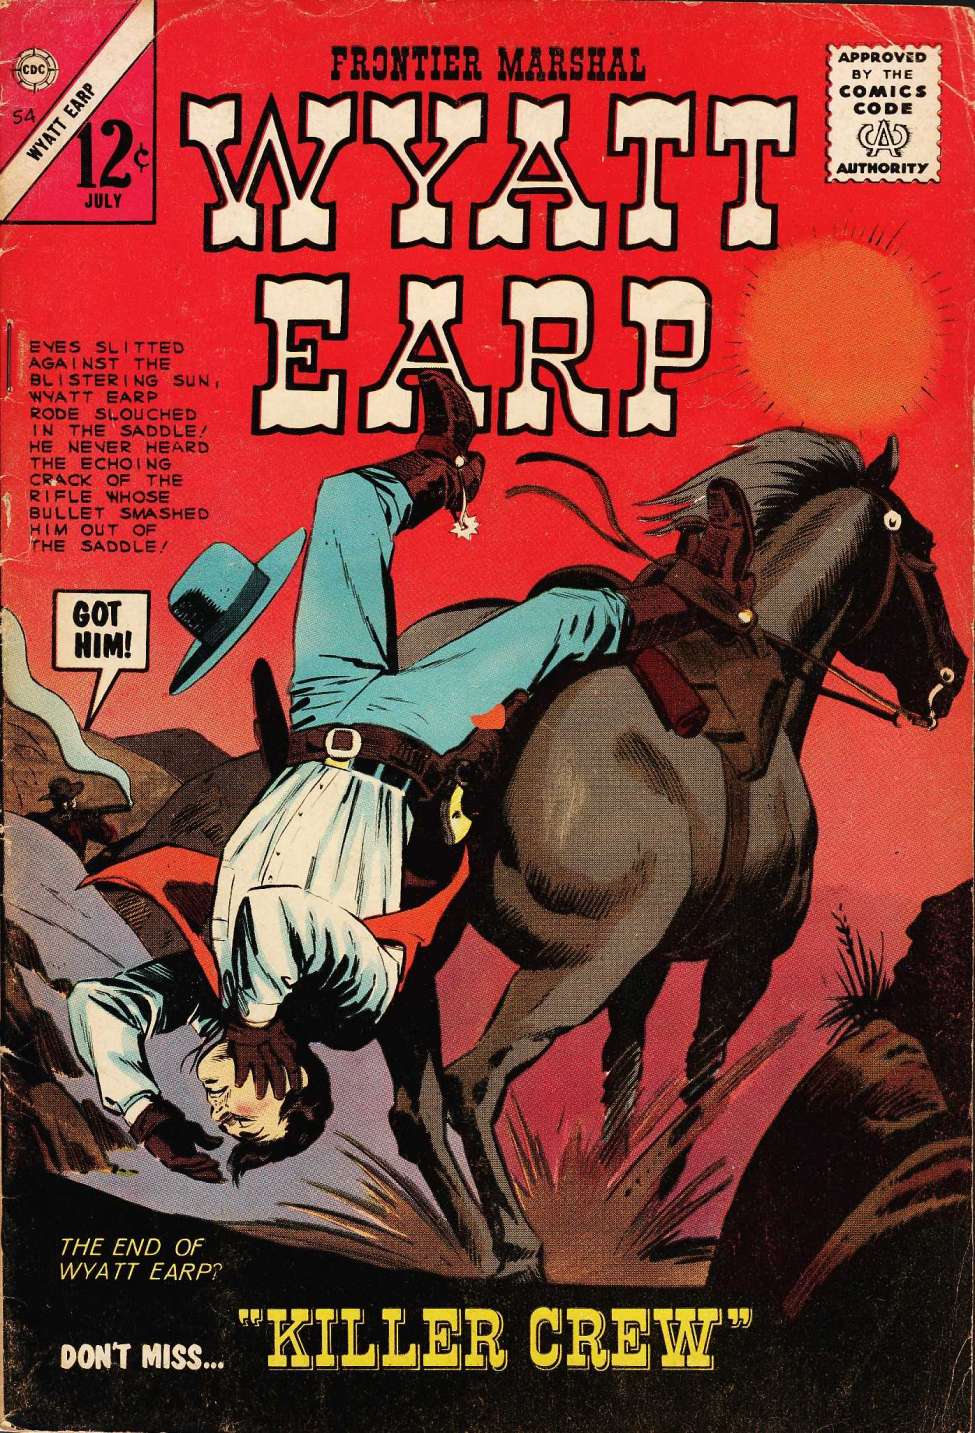 Book Cover For Wyatt Earp Frontier Marshal 54